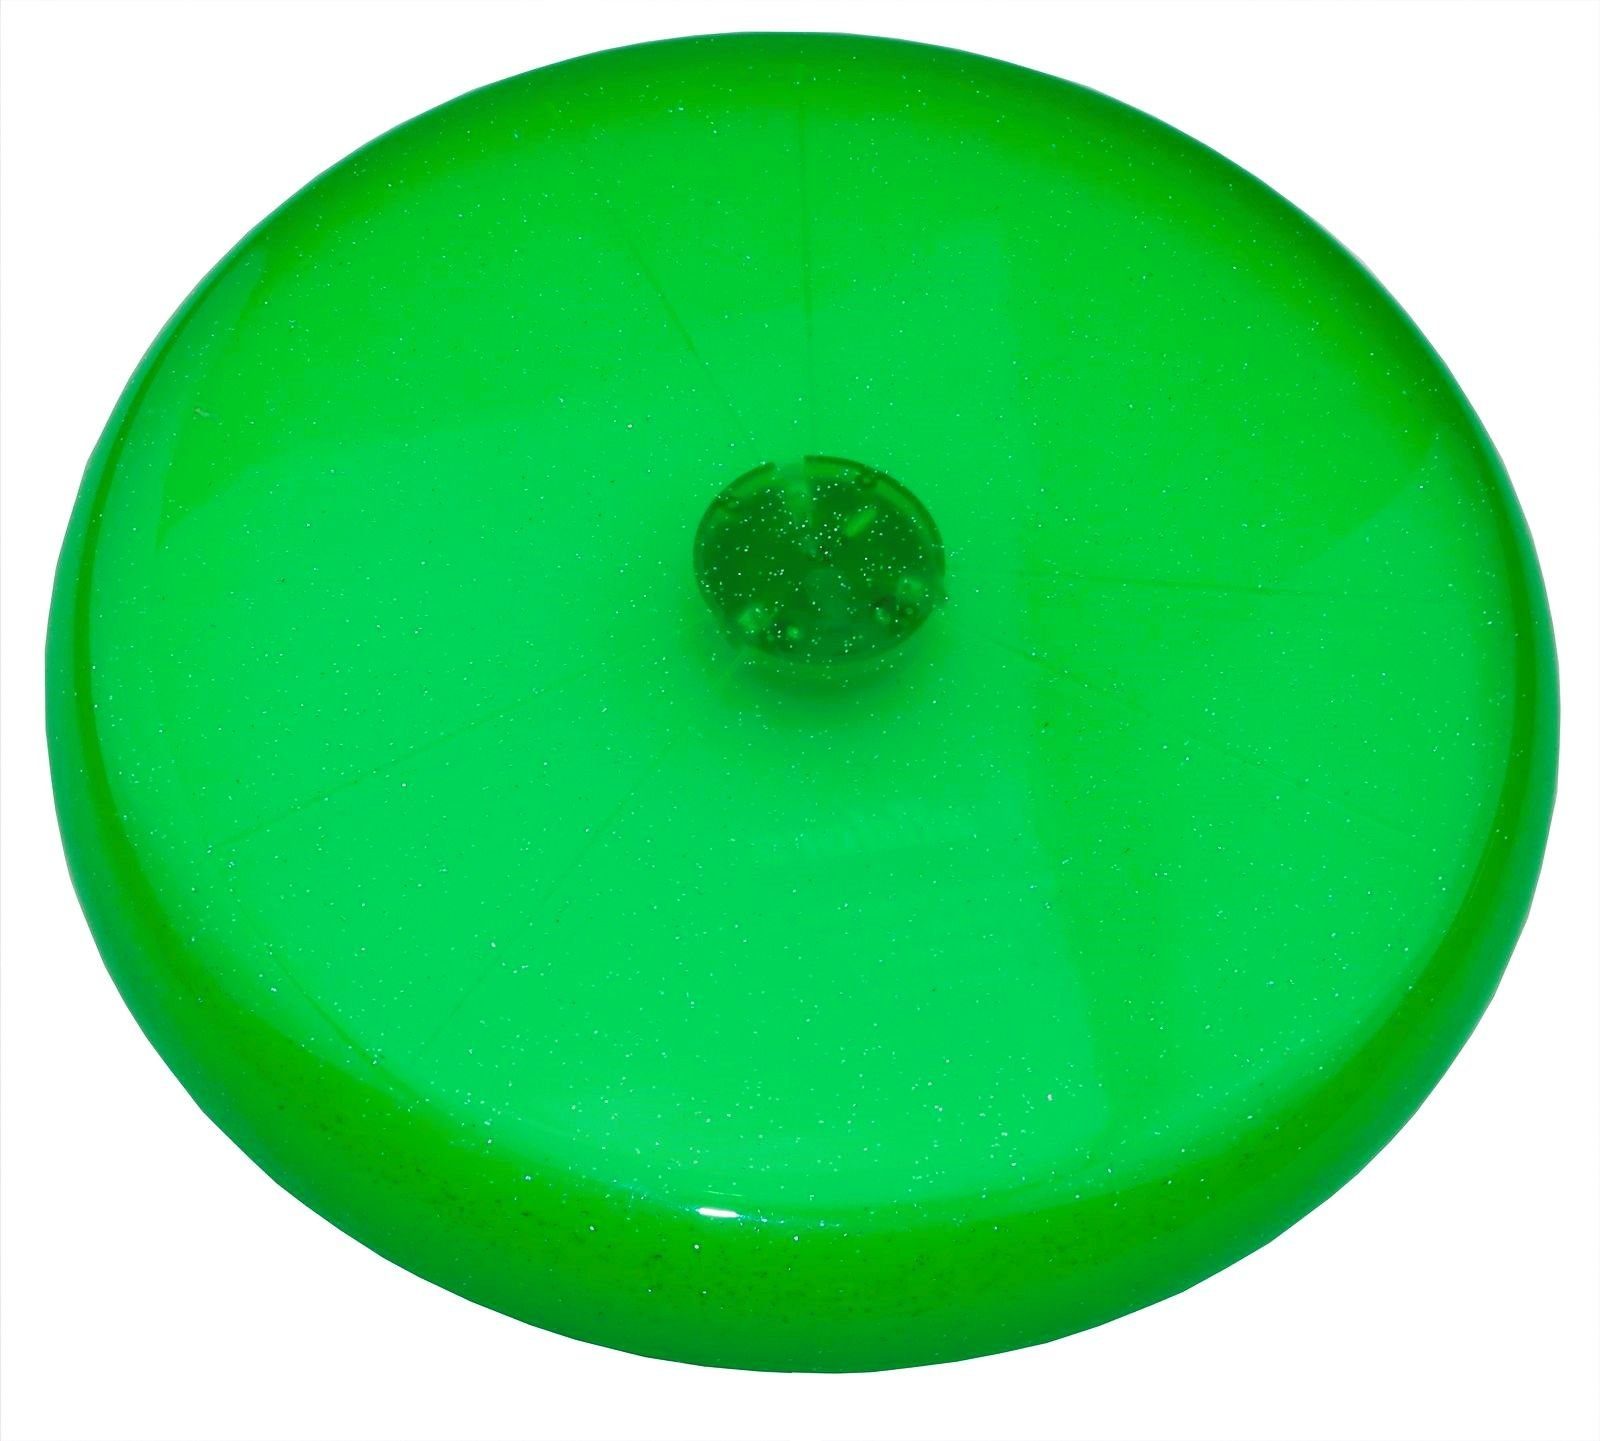 alldoro Wurfscheibe 63017, grüne mit Ø cm LED 3 Lichtern, blinkenden Disc 27